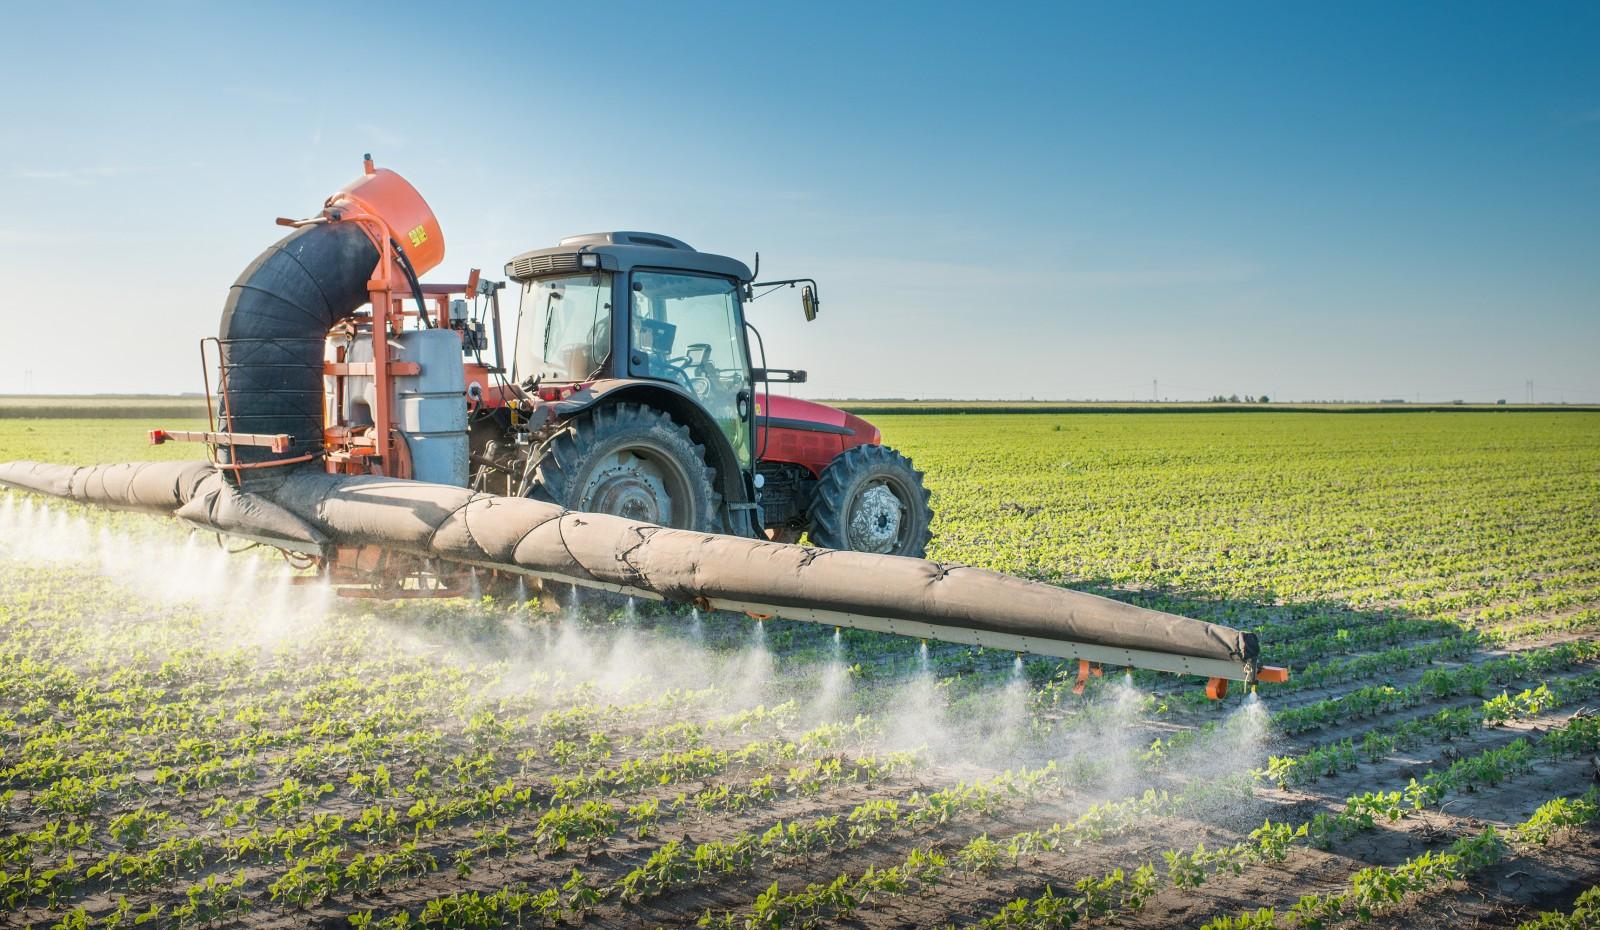 Частка фальсифікованих пестицидів на ринку України становить від 25–30%